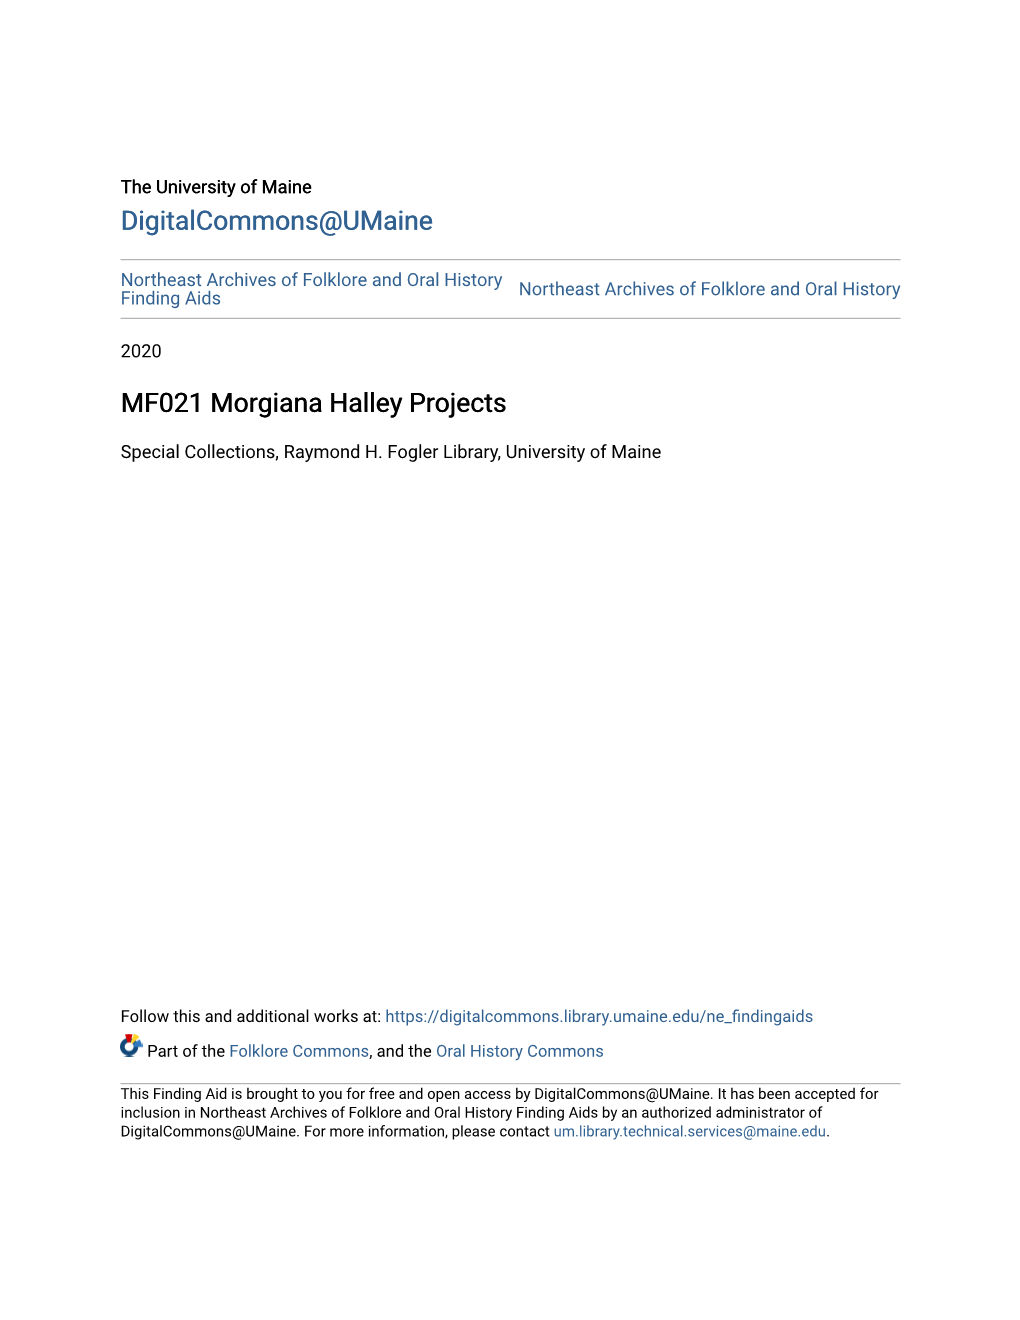 MF021 Morgiana Halley Projects